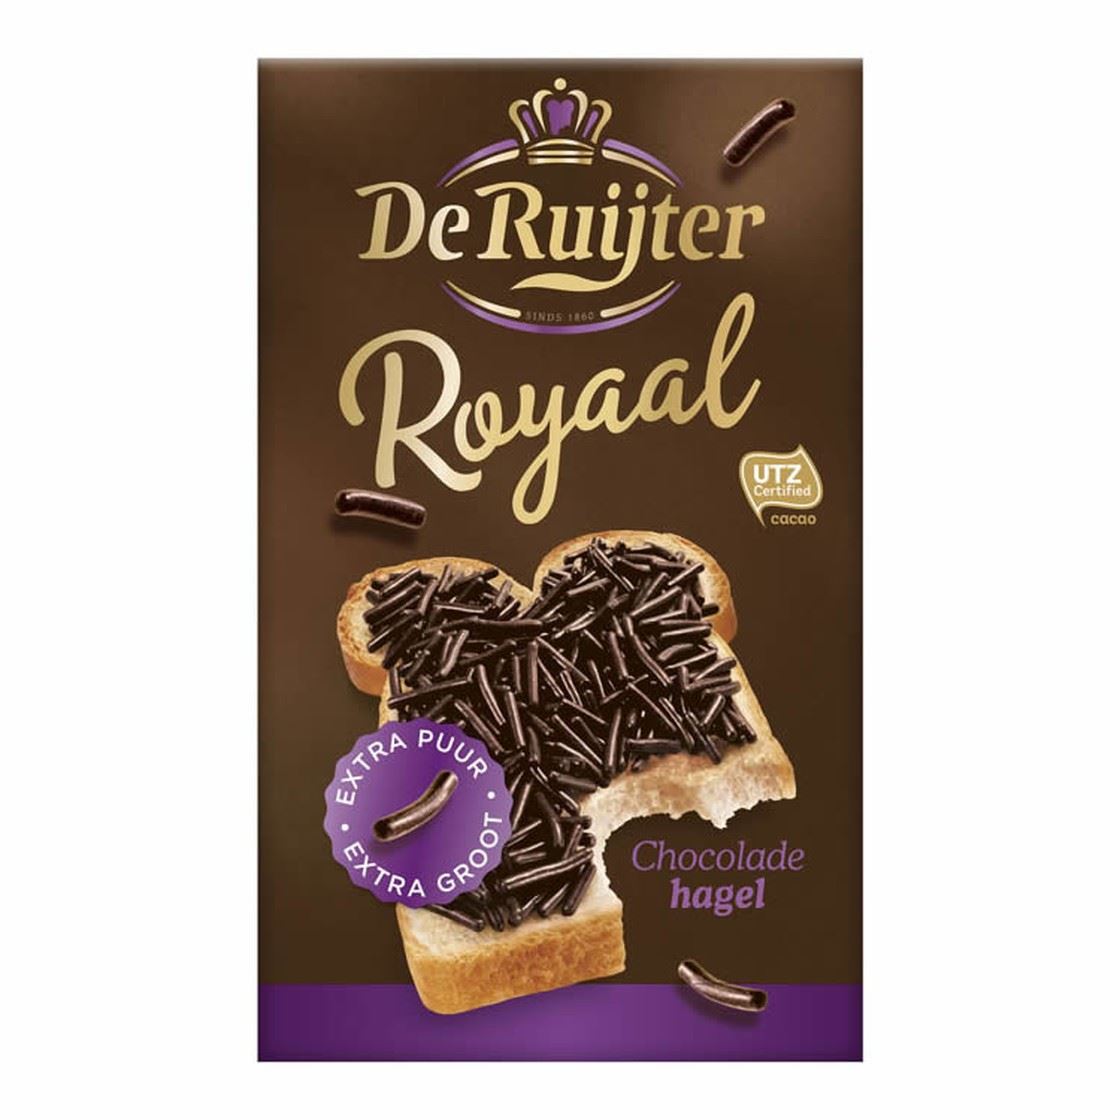 De Ruijter Royaal Zartbitterschokoladen Streusel 380g Packung